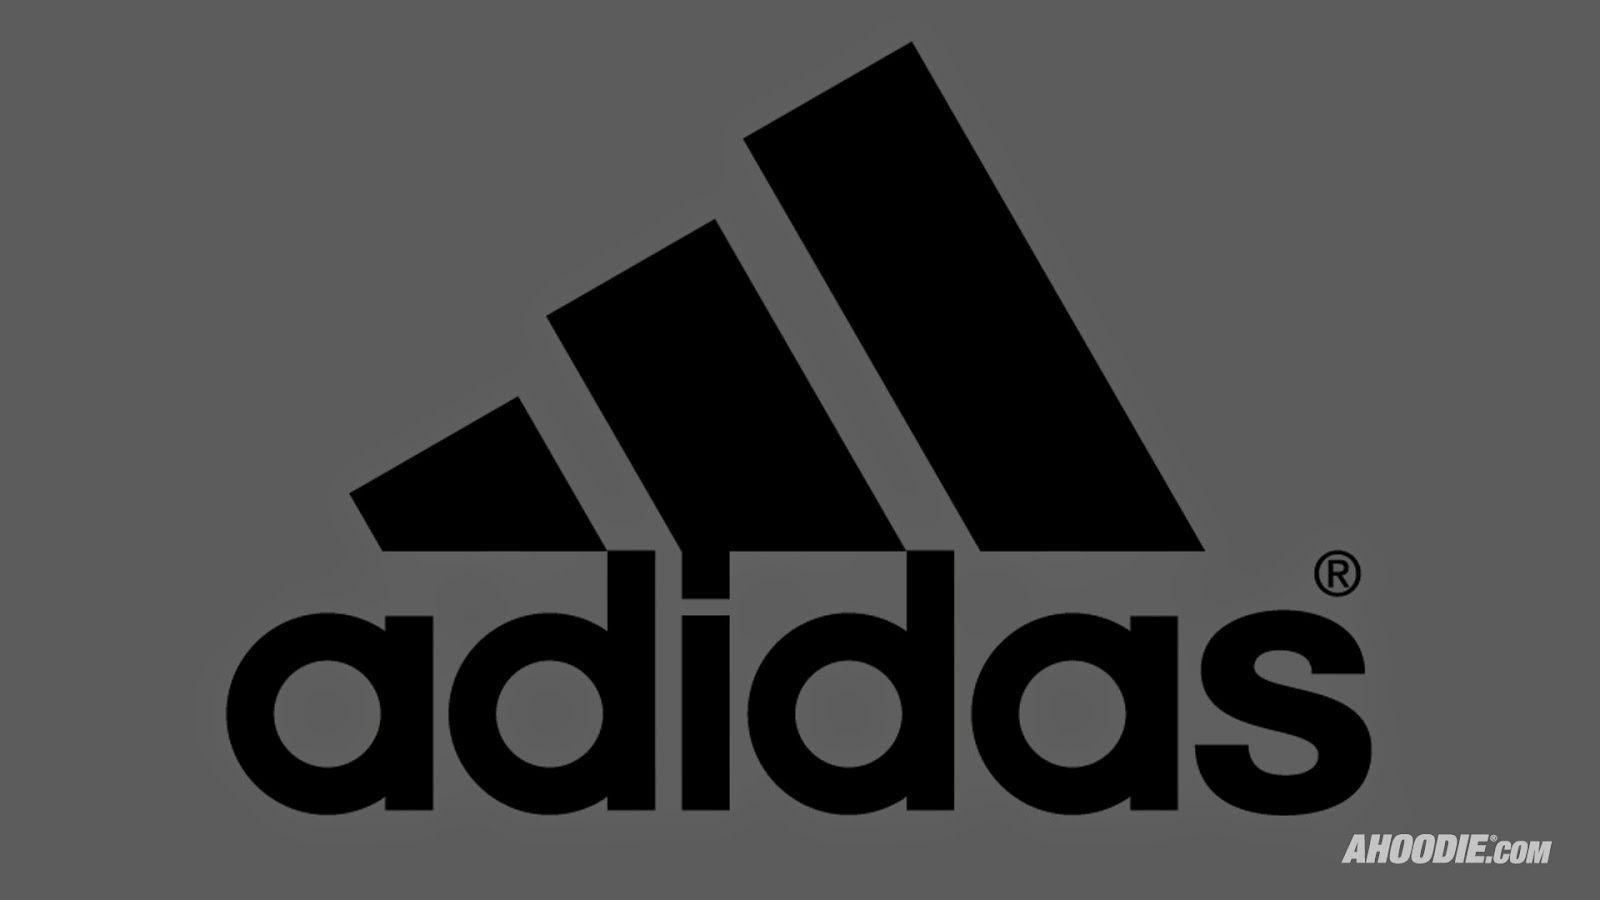 grey adidas logo